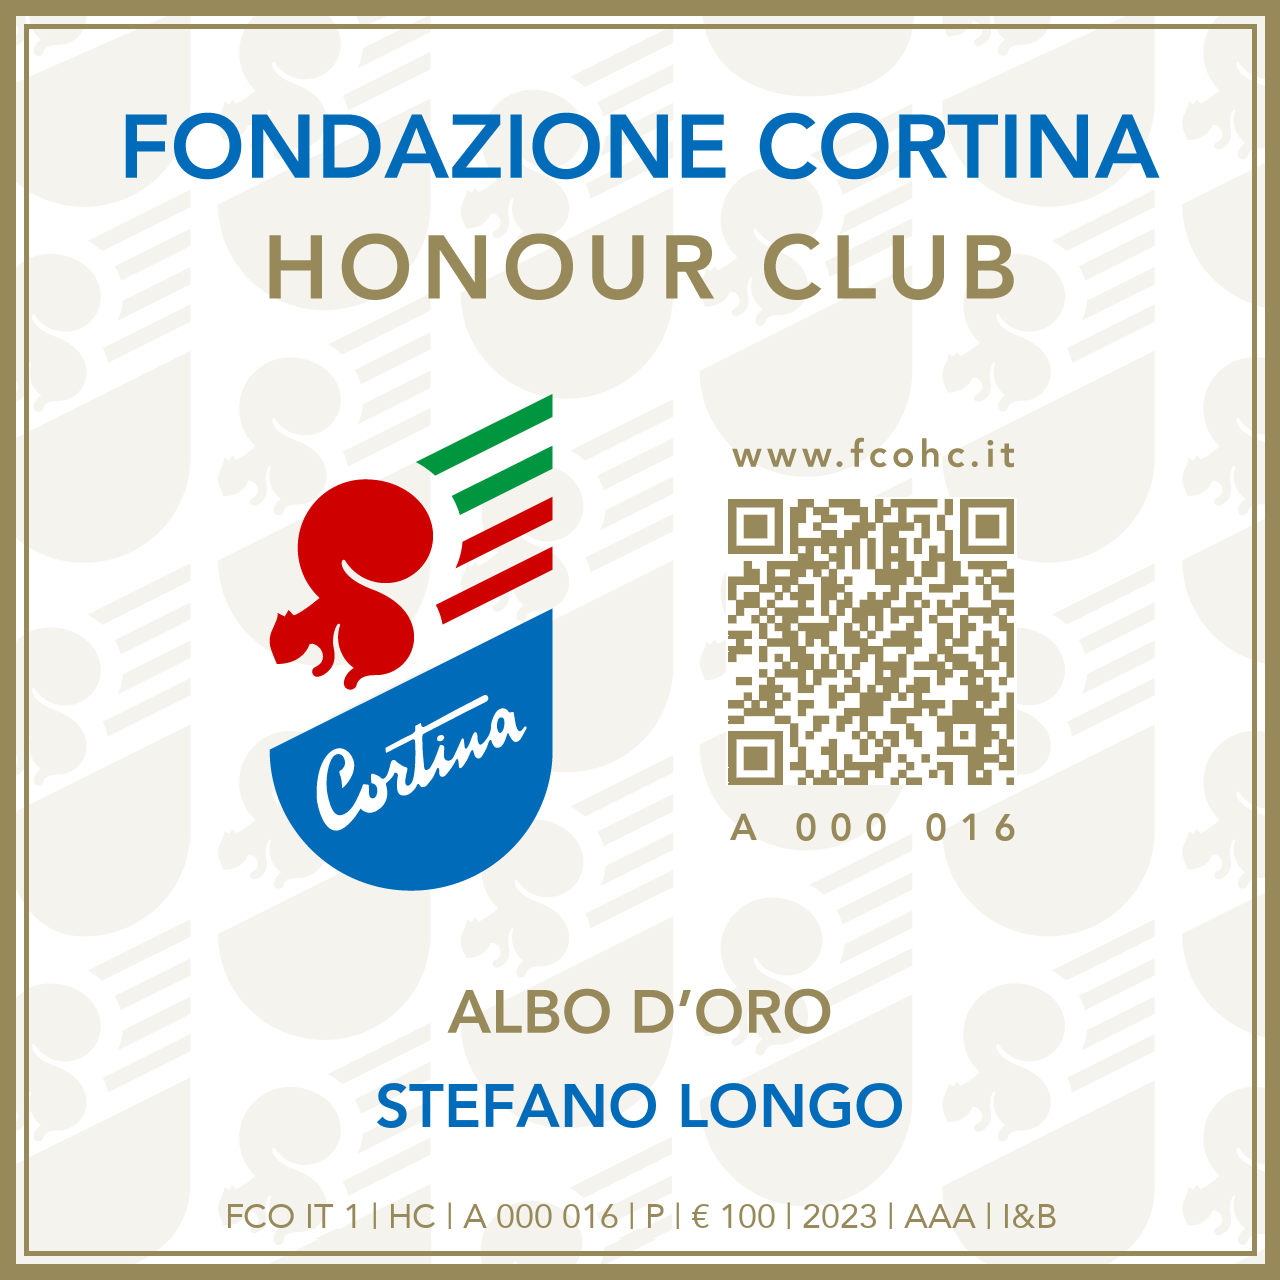 Fondazione Cortina Honour Club - Token Id A 000 016 - STEFANO LONGO